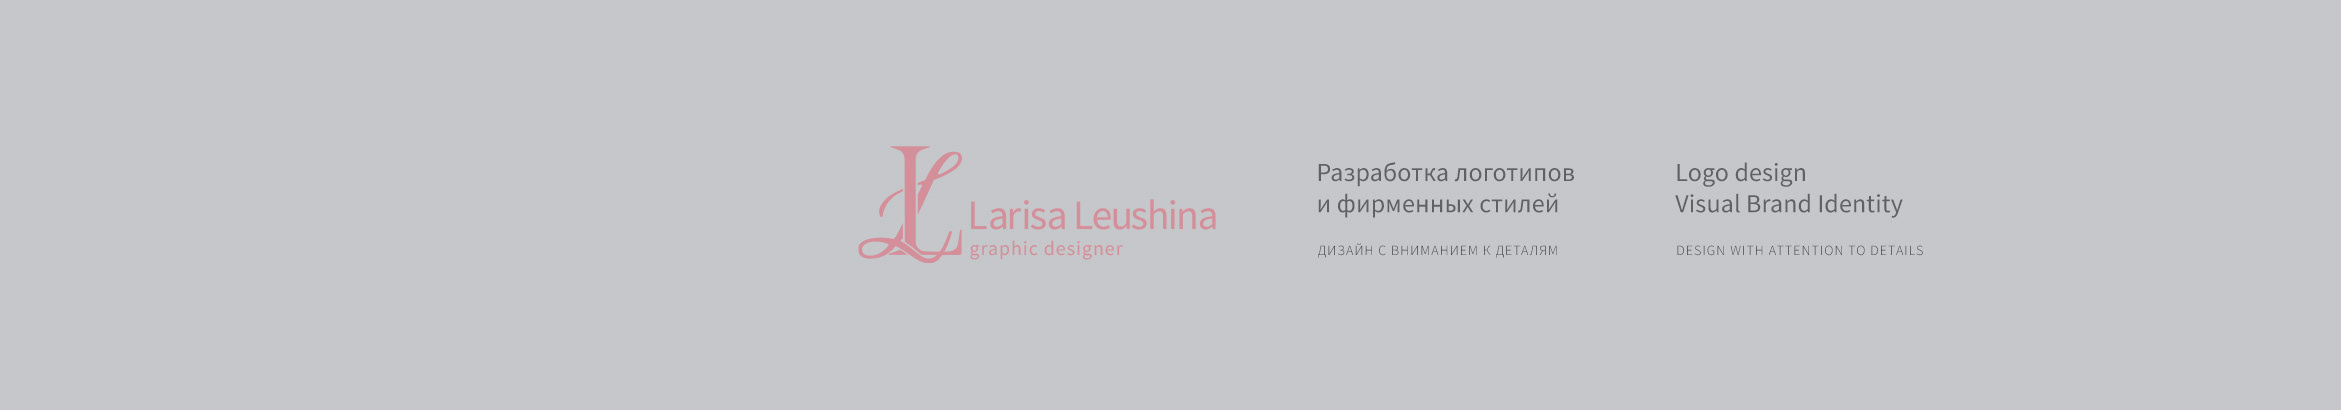 Baner profilu użytkownika Larisa Leushina